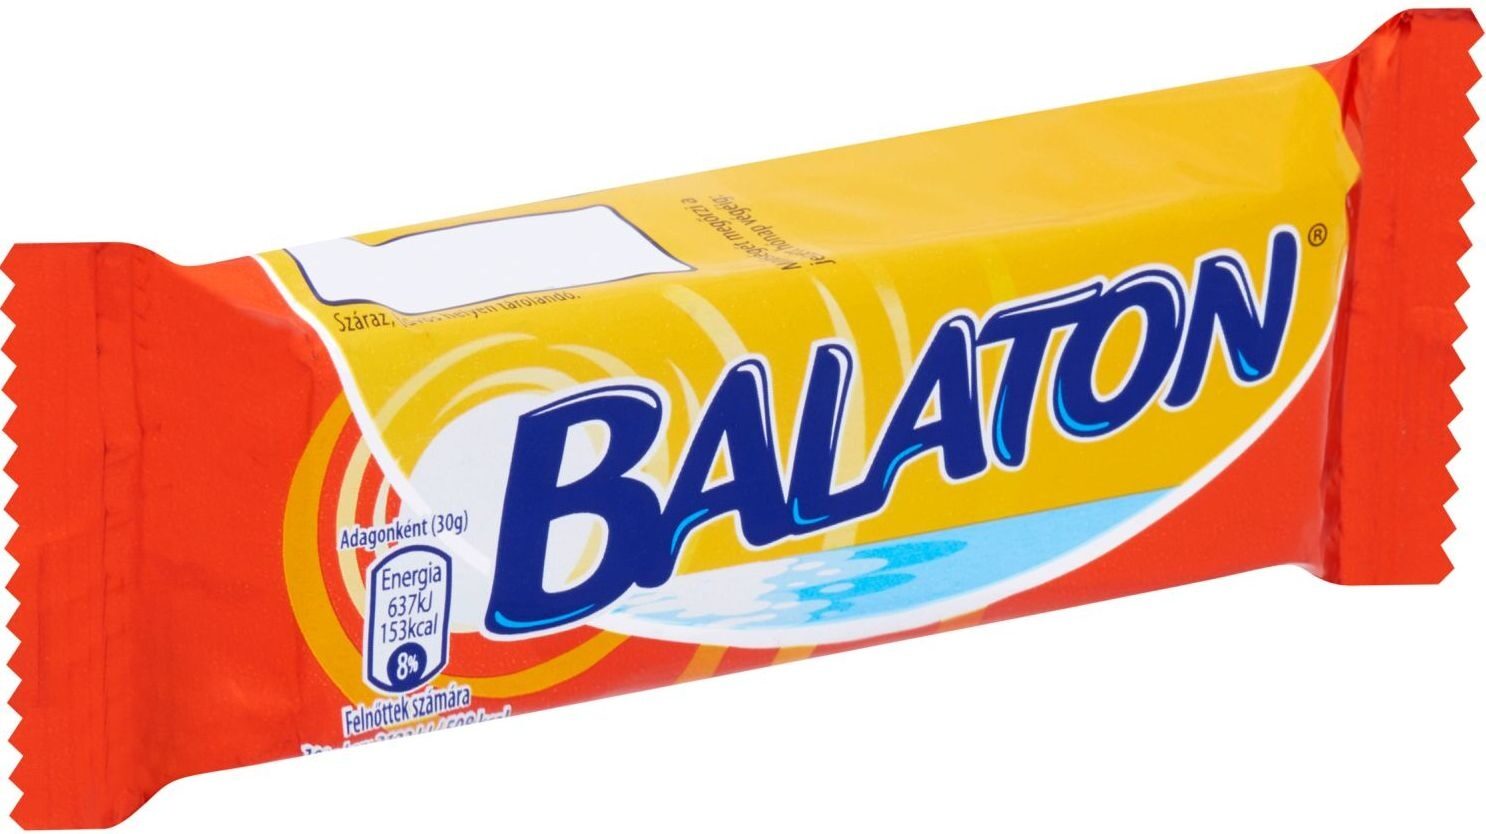 BALATON® Ét - Product - hu